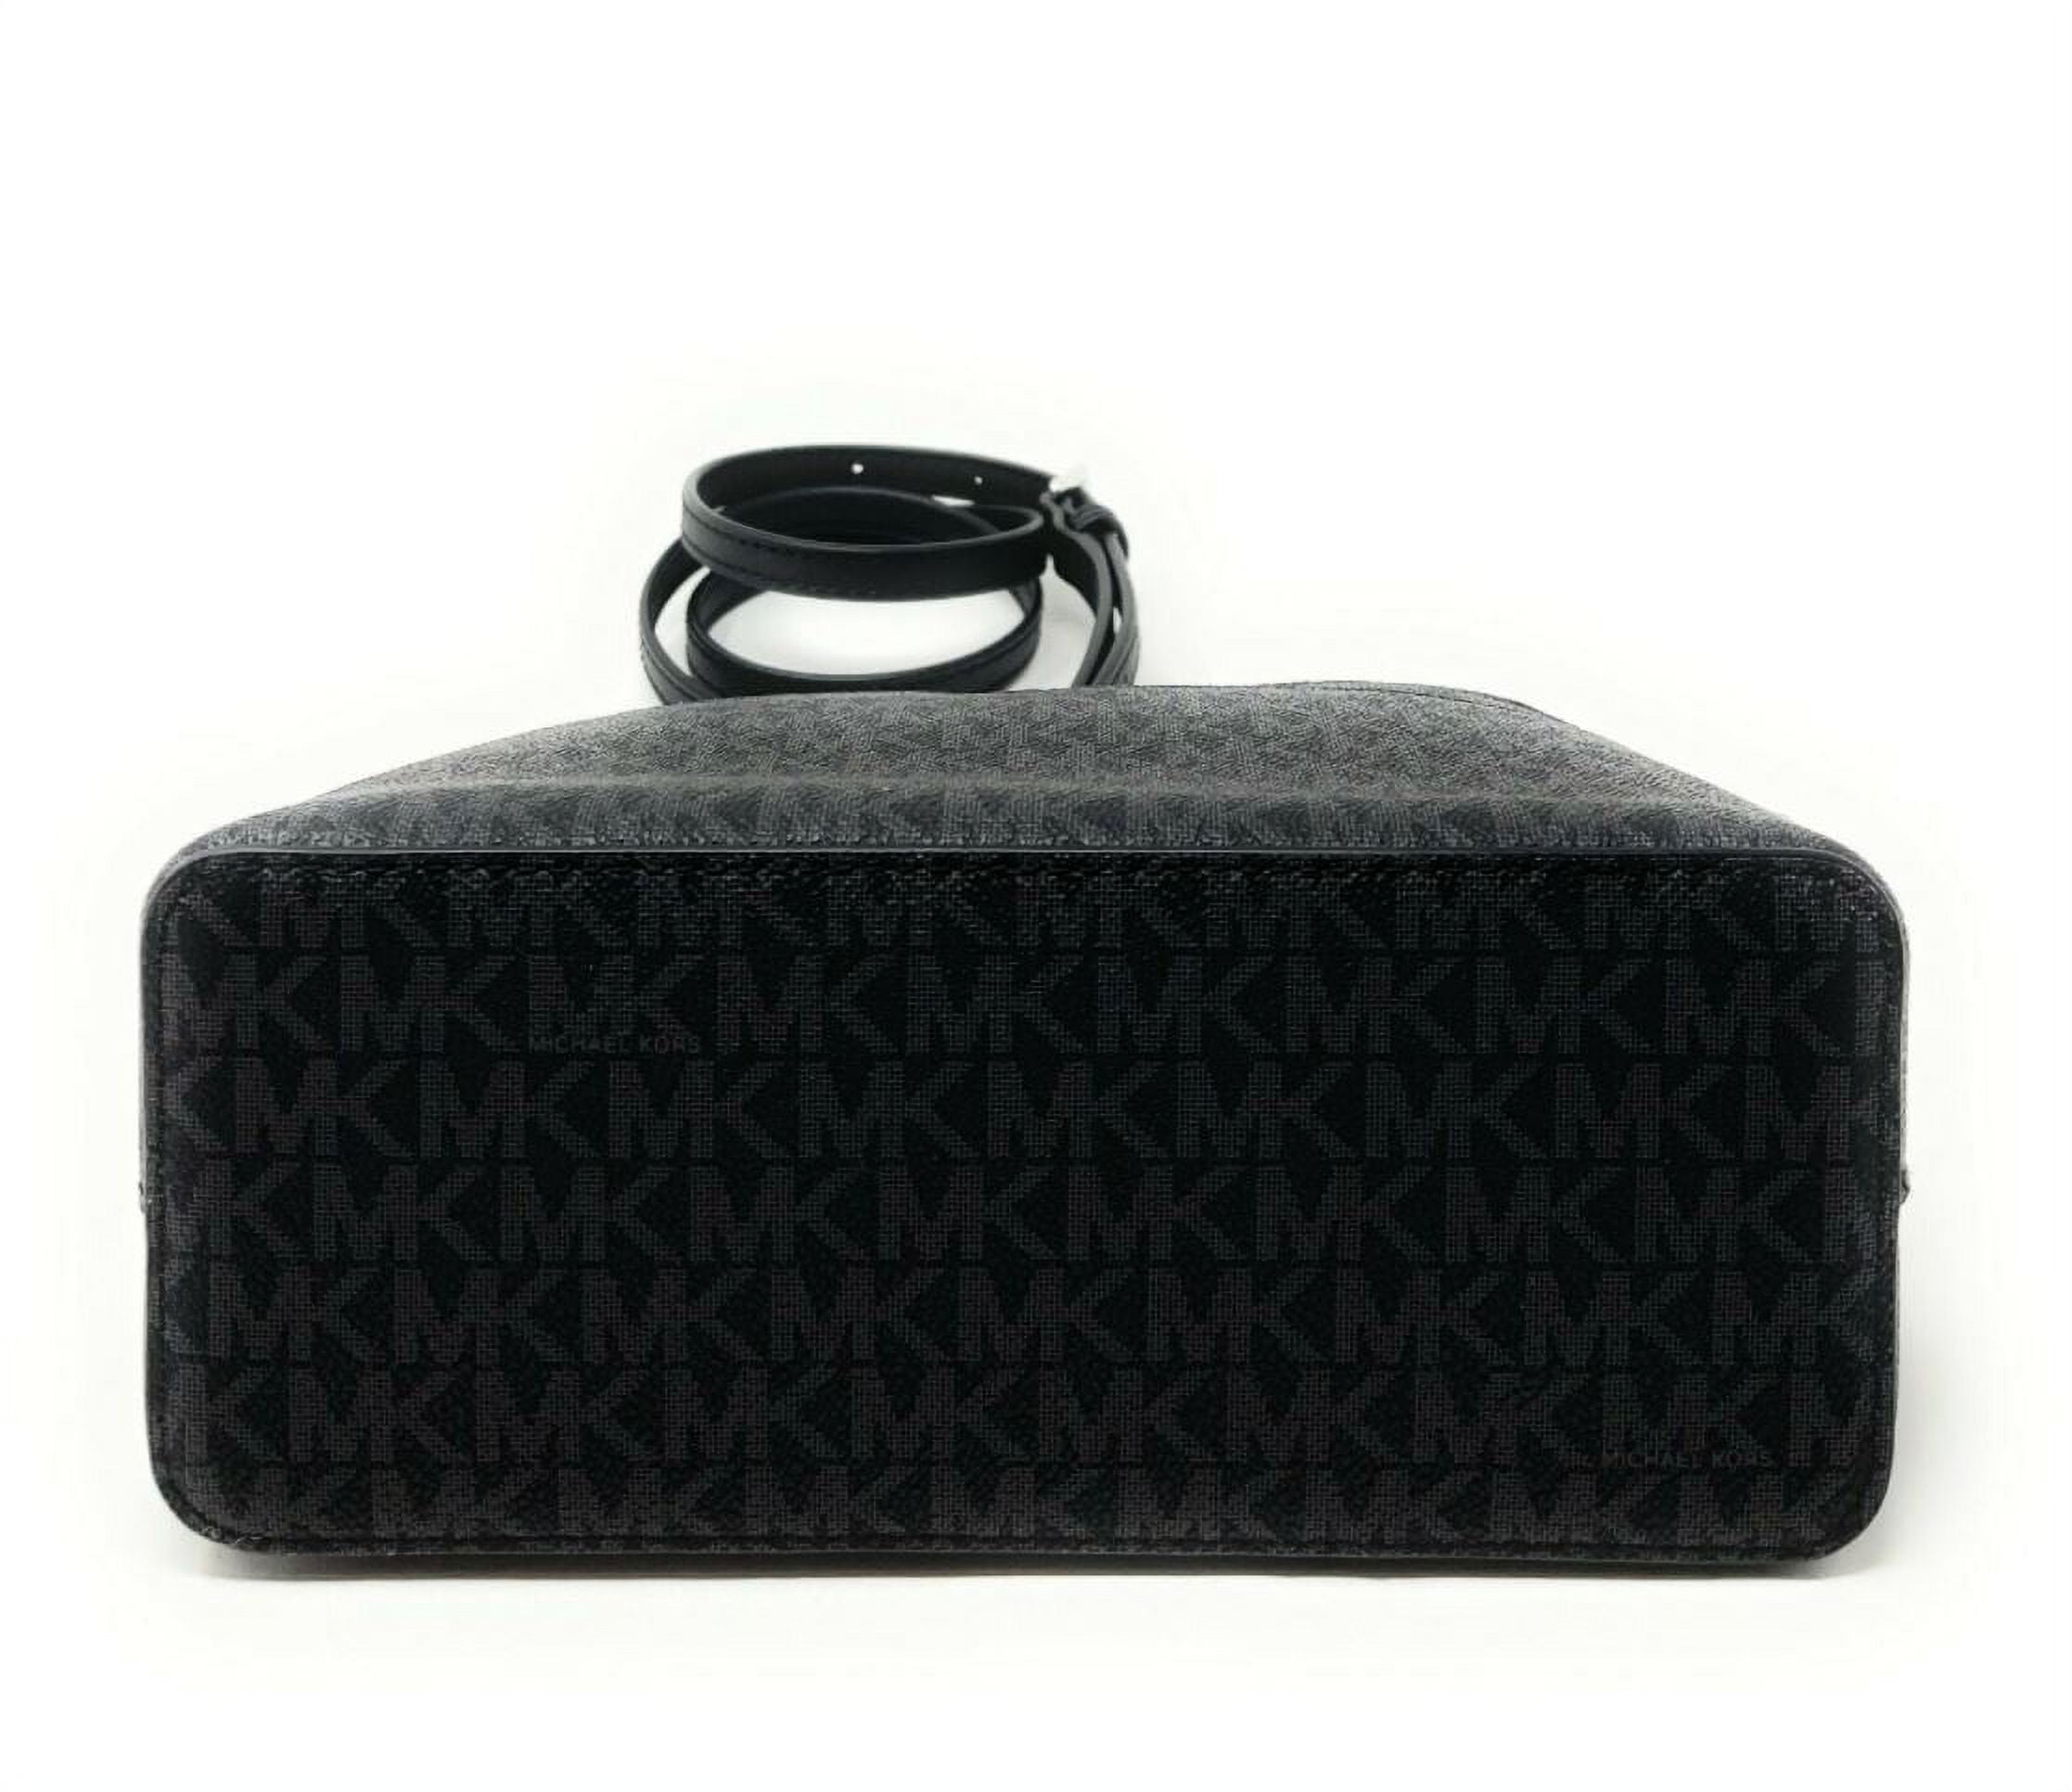 Michael Kors Bags | Michael Kors Jet Set Travel Medium Saffiano Leather Dome Satchel Black | Color: Black/Gold | Size: Medium | 4yousale's Closet